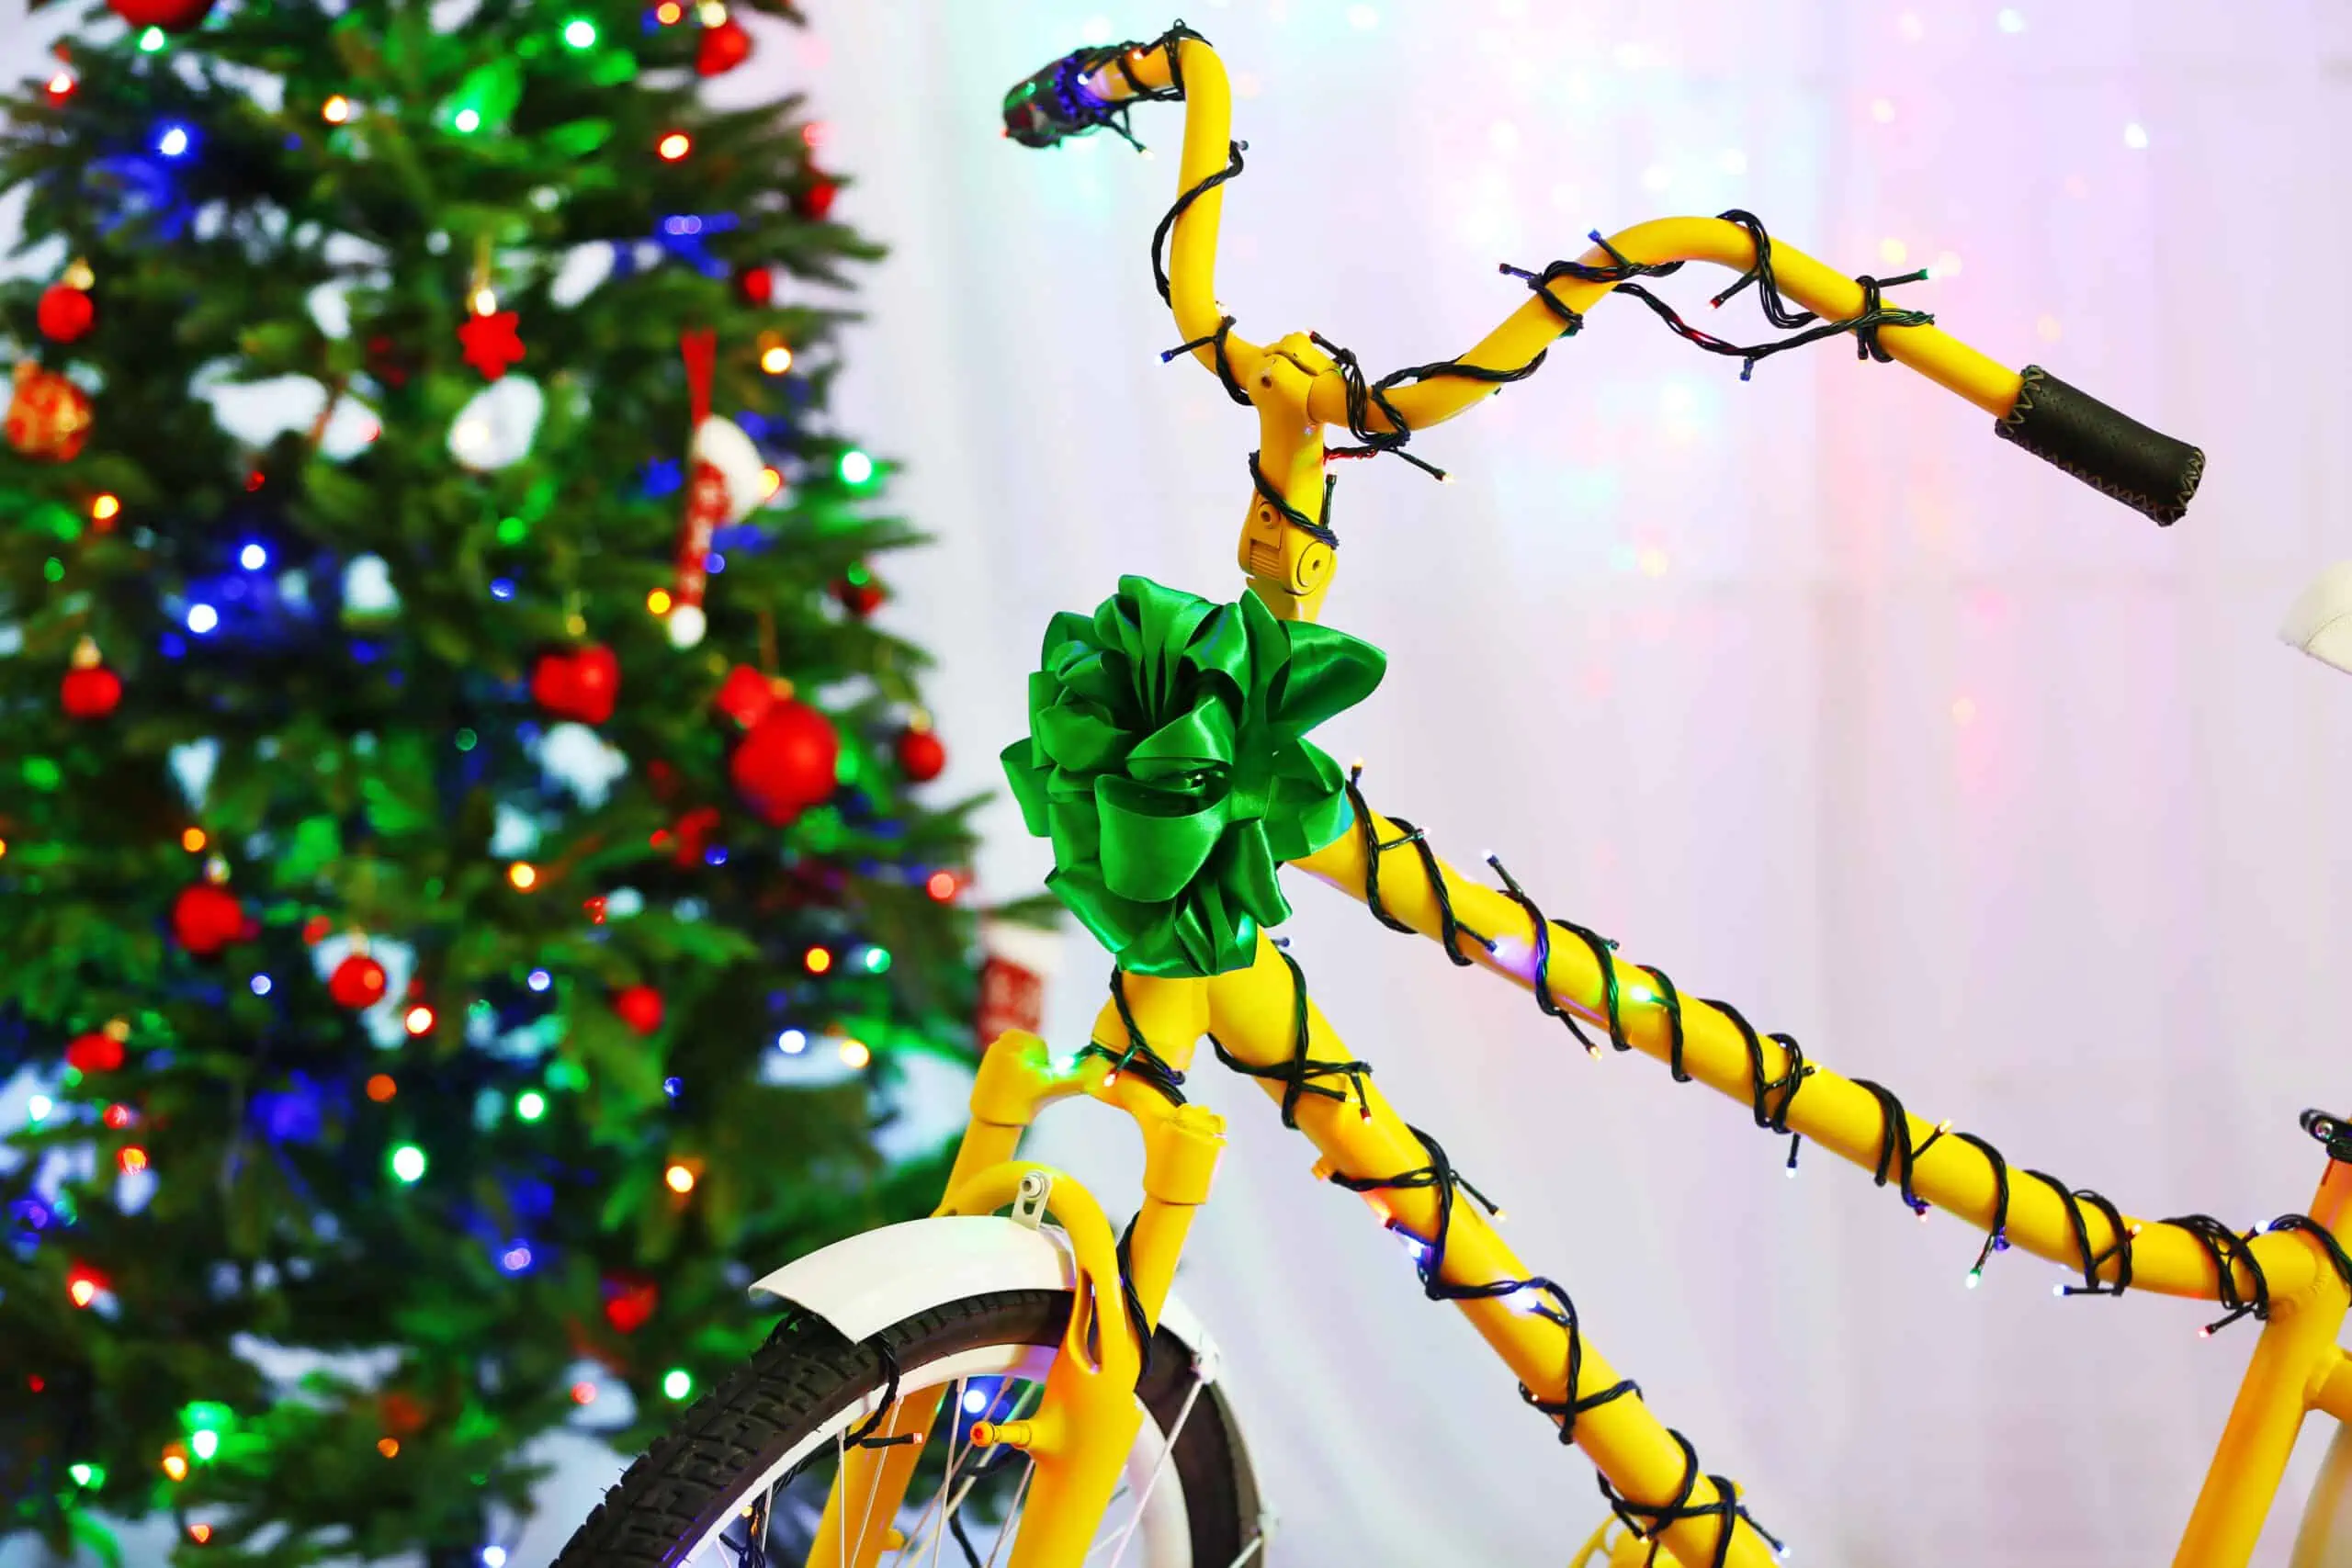 Best Kids Bike for Christmas 2022